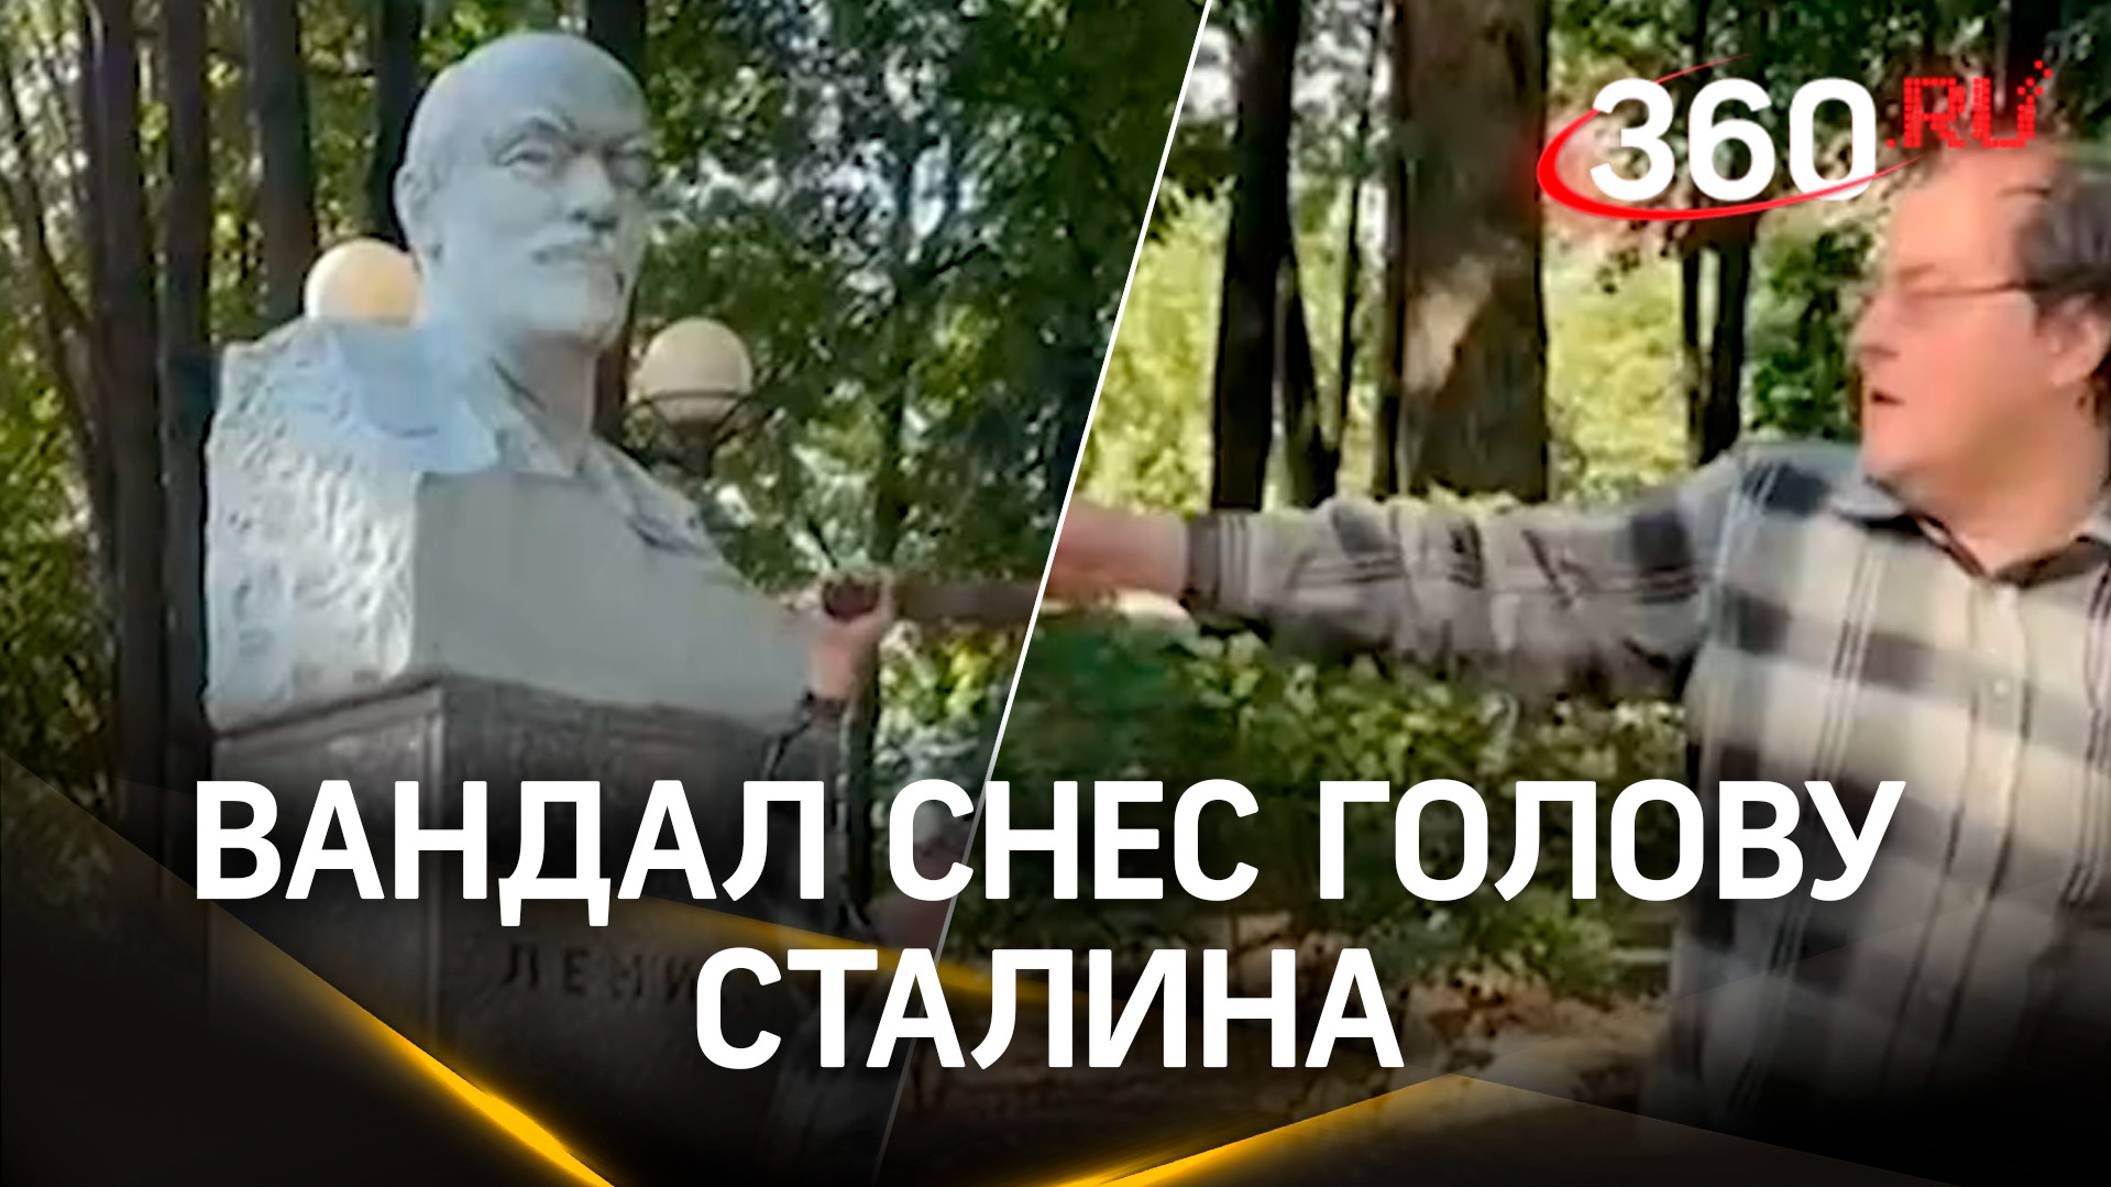 Голову Сталина вернут на место - вандал с кувалдой разбил бюст генералиссимуса  в Звенигороде